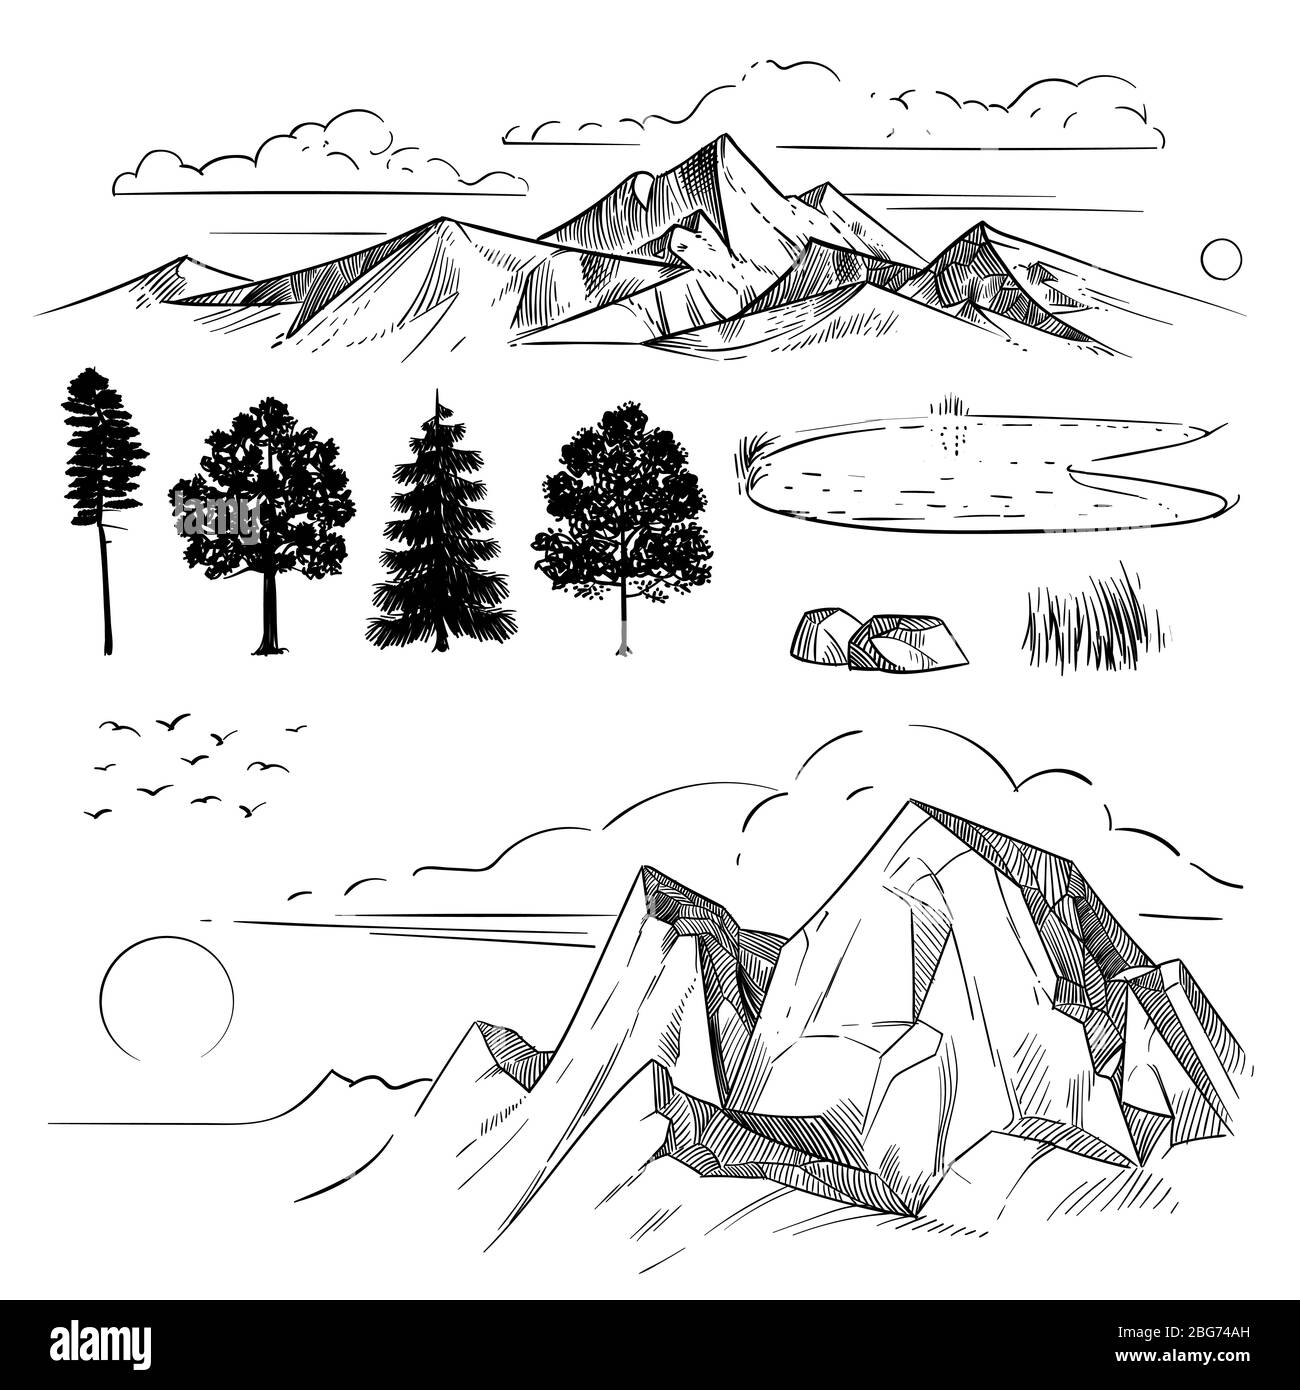 Hand Zeichnung Bergkette, Spitzen Wolken, Sonne und Waldbäume. Retro Berge und Landschaft Elemente isoliert Radierung Vektor-Set. Naturlandschaft, Stock Vektor